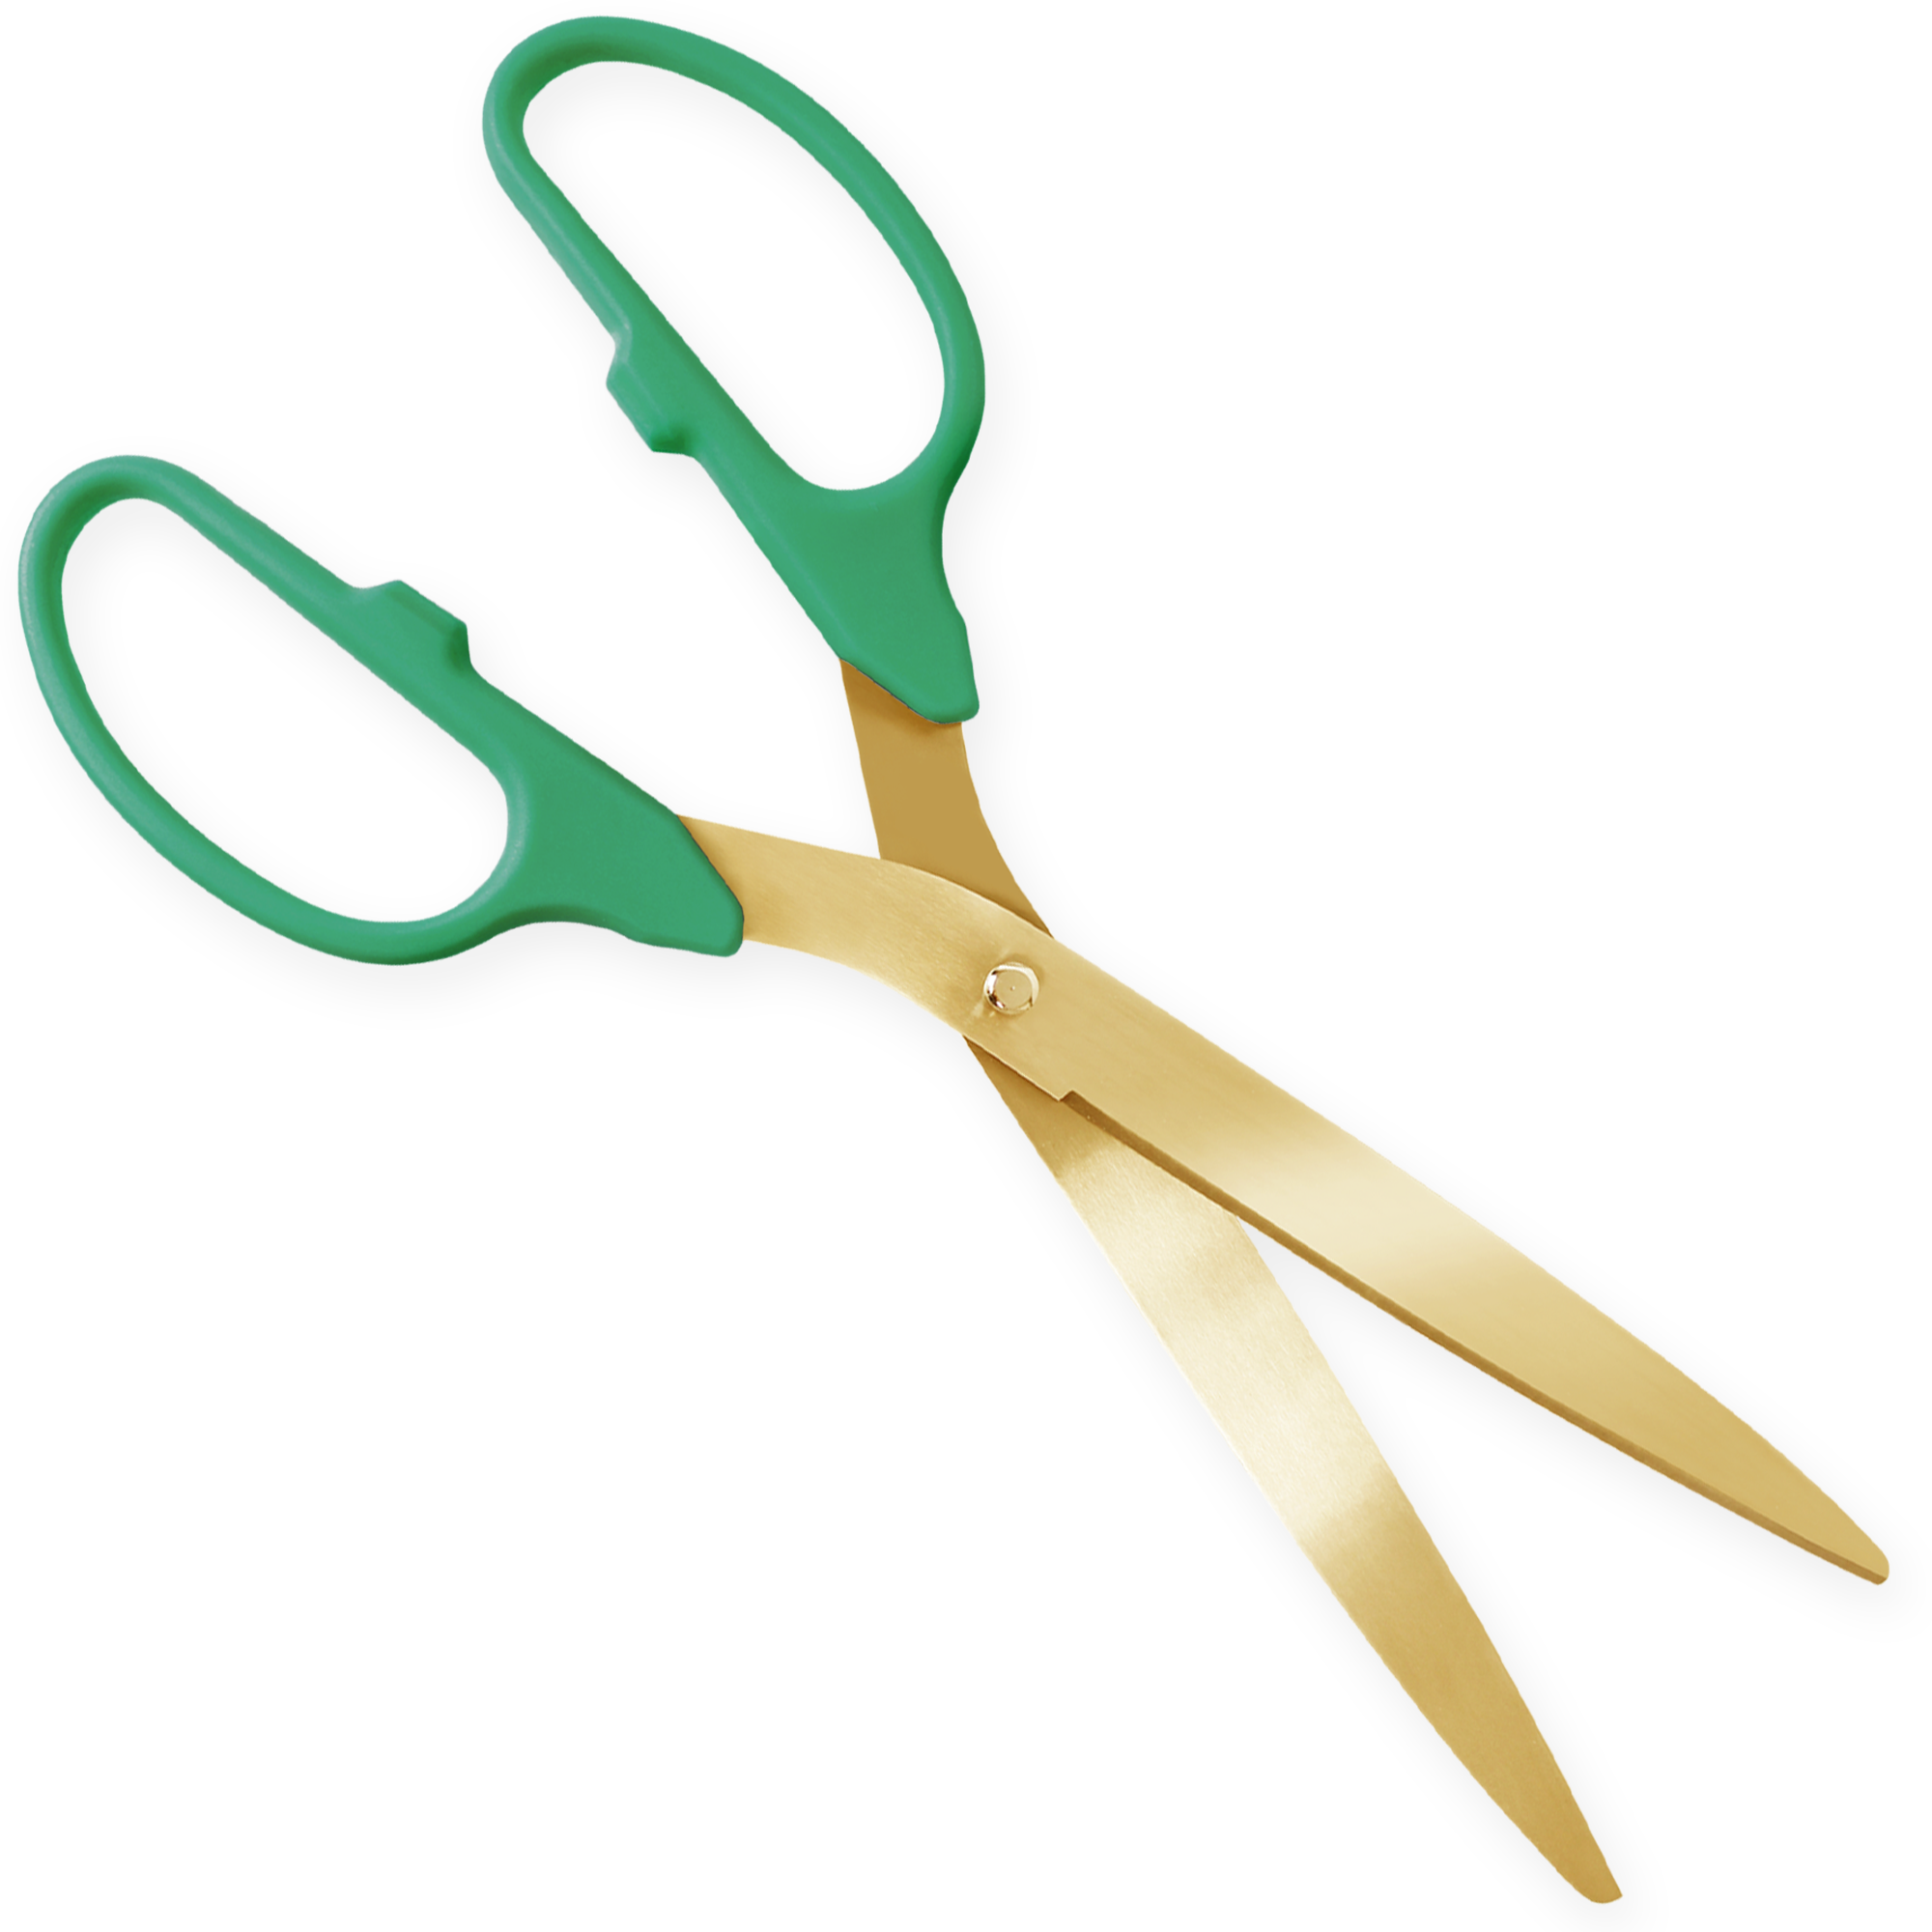 3 Foot Ceremonial Scissors - Hunter Green Handles - Golden Openings